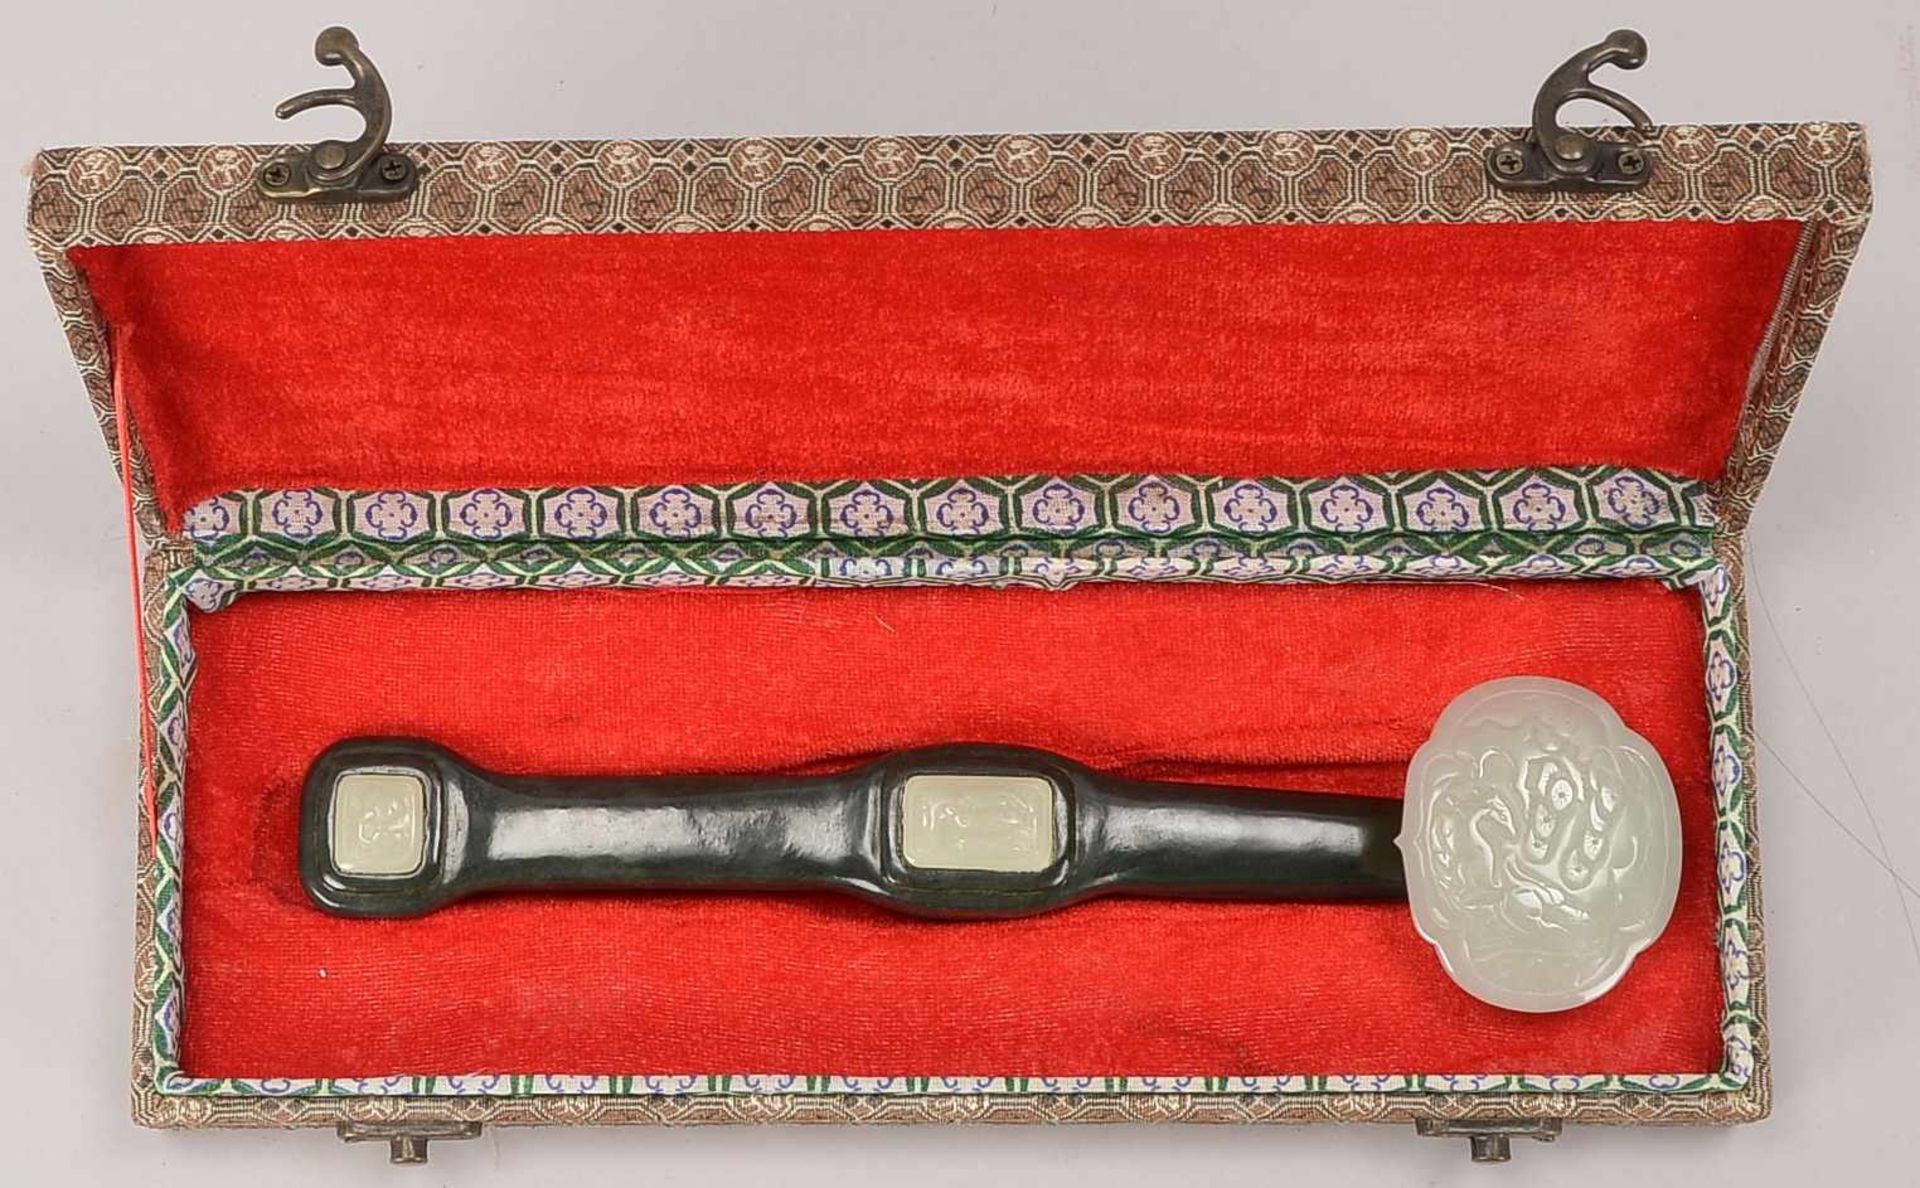 Rui-Zepter, dunkelgrüne und weiße Jade, mit eingeschliffener Marke, im original Kasten; Länge 26,5